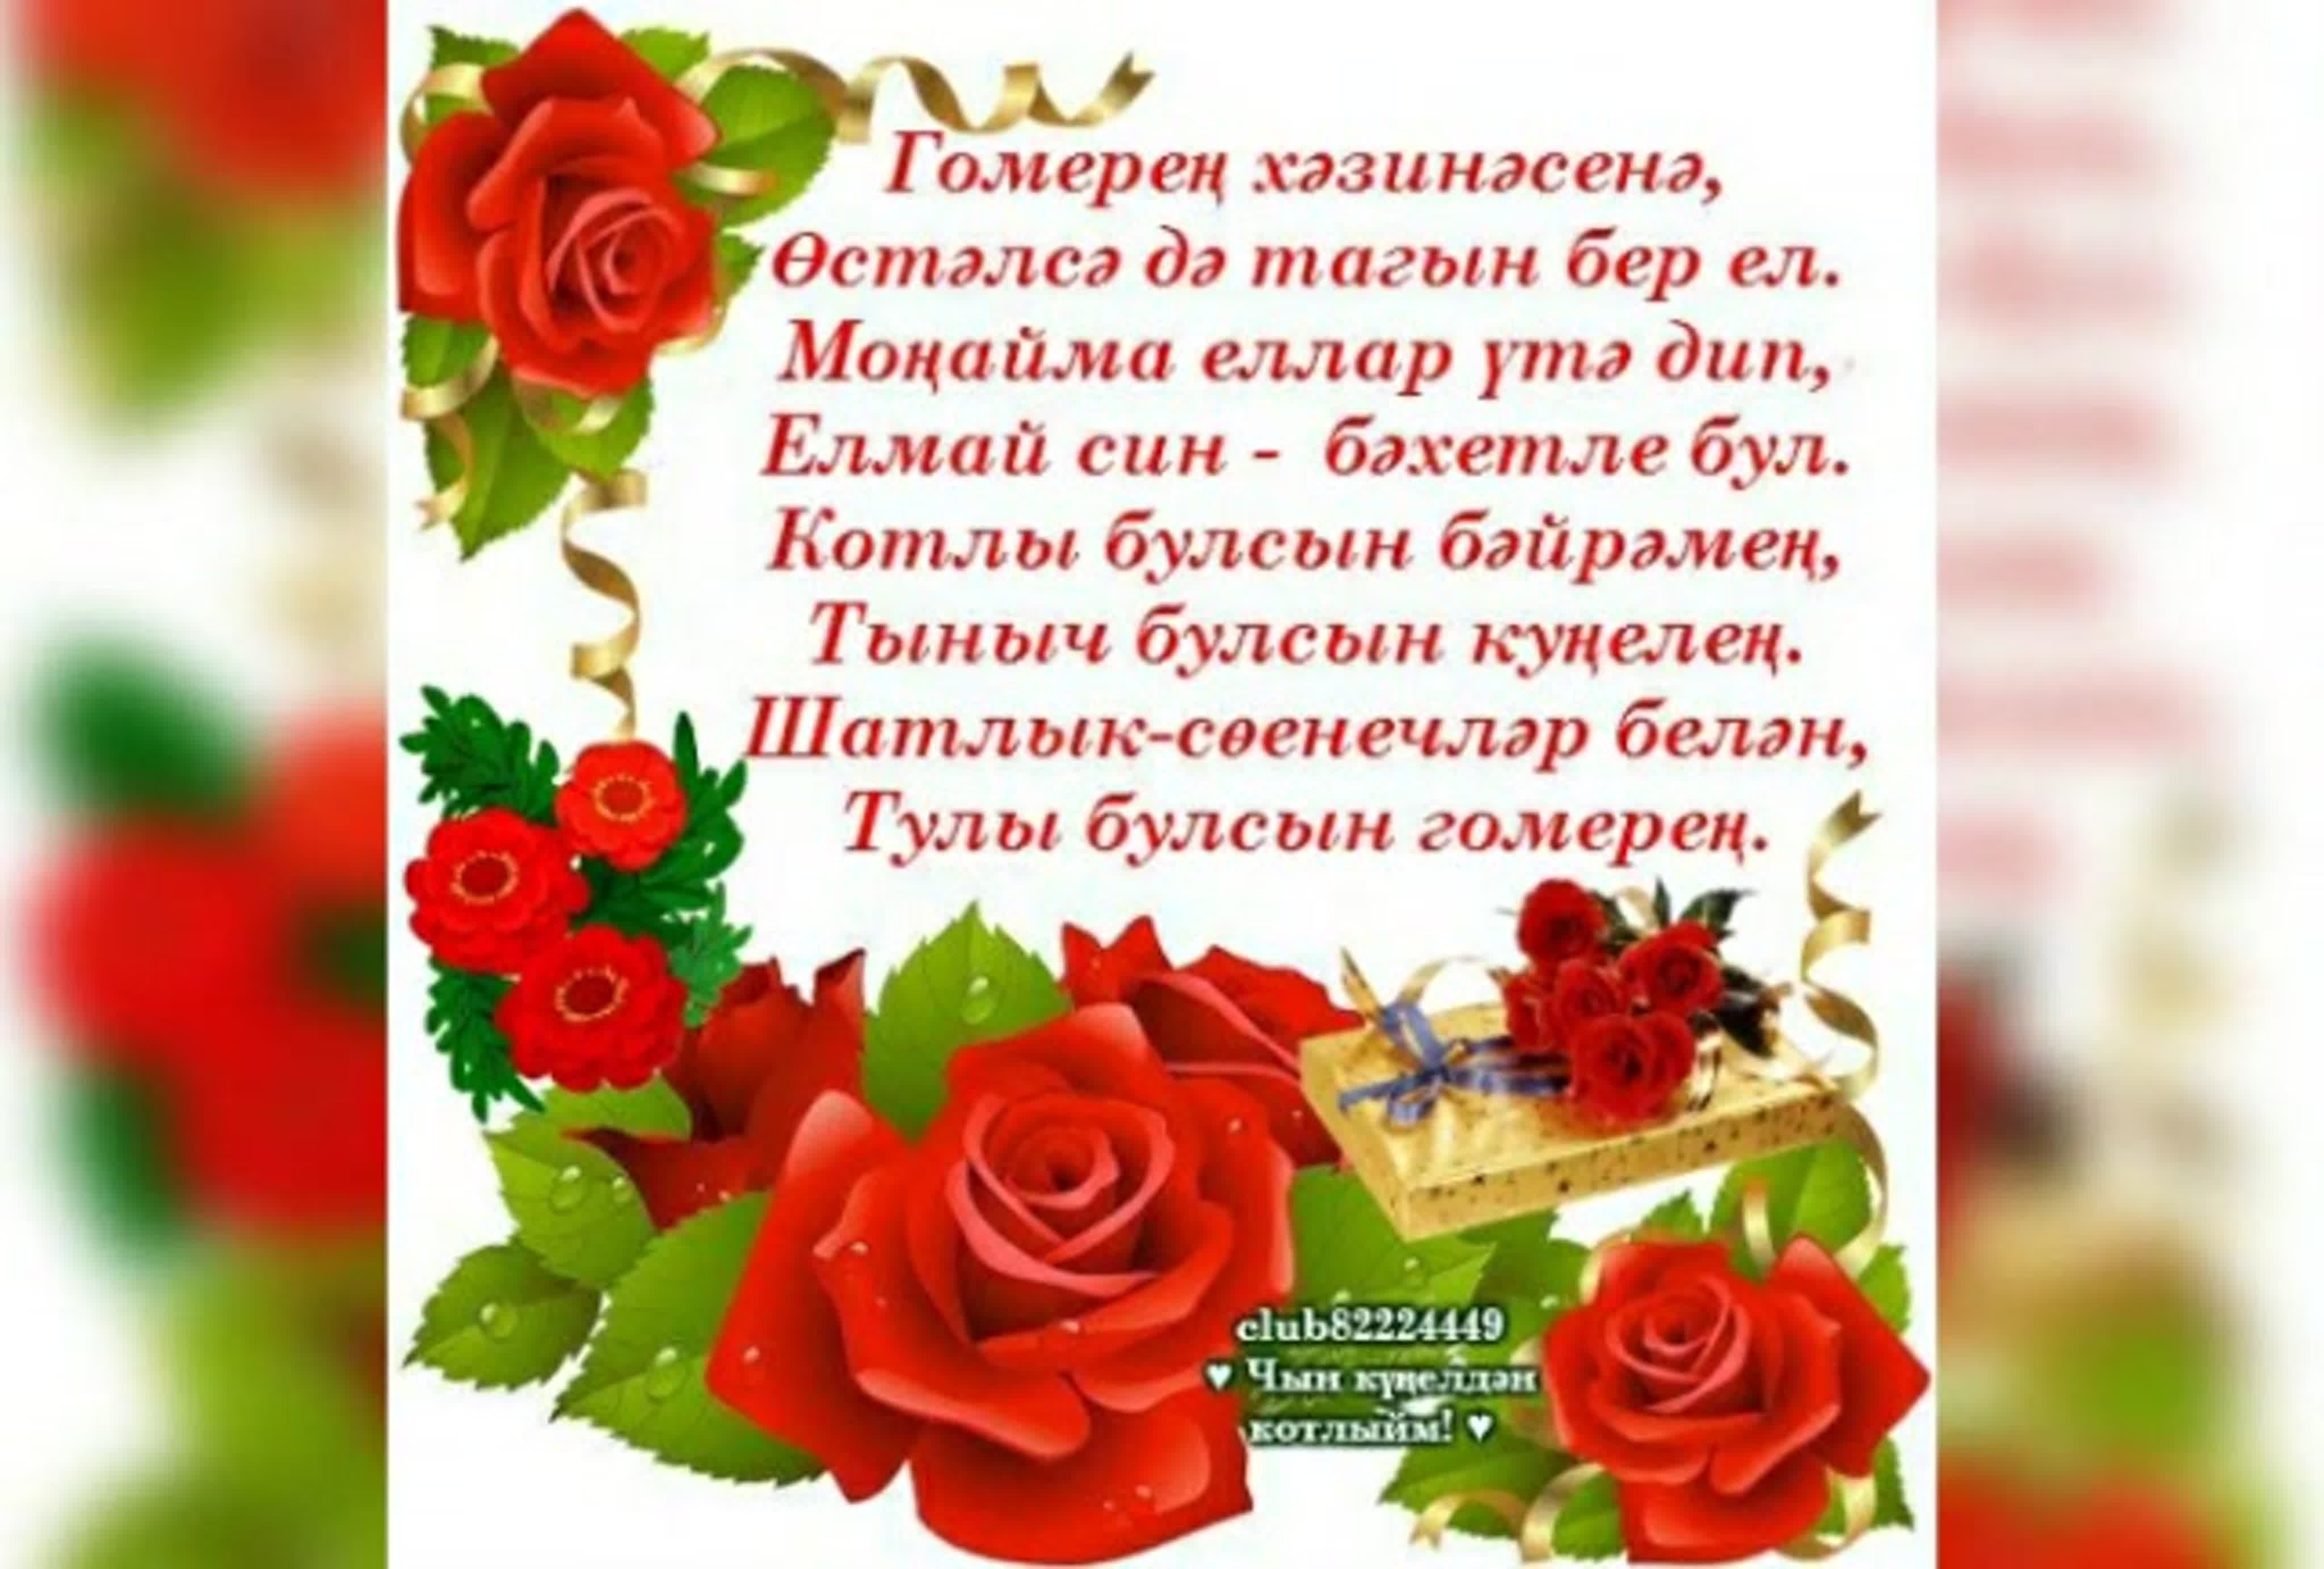 Поздравления брату с днем на татарском. Поздравления с днём рождения на татарском. Поздравления с днём рождения на татарском языке. Поздравления с днём с днём рождения на татарском языке. Пожелания с днём рождения по татарский.